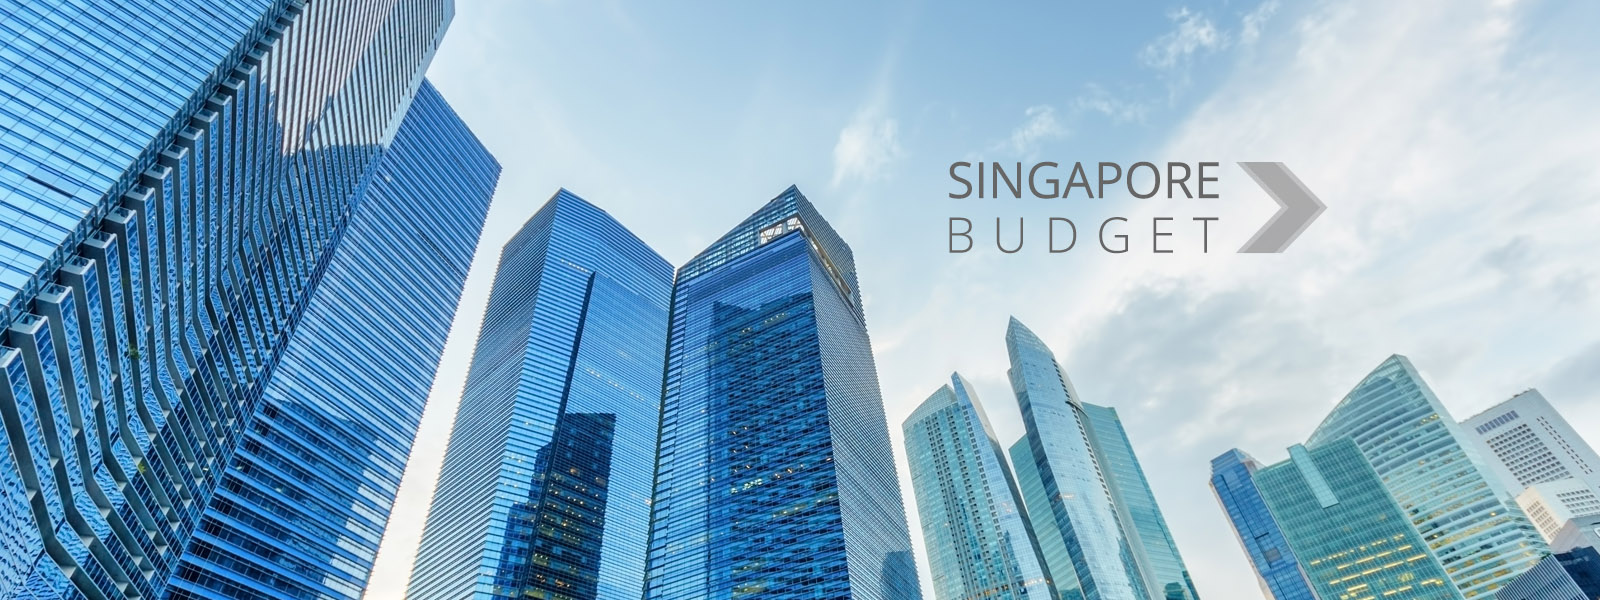 Singapore Budget 2021